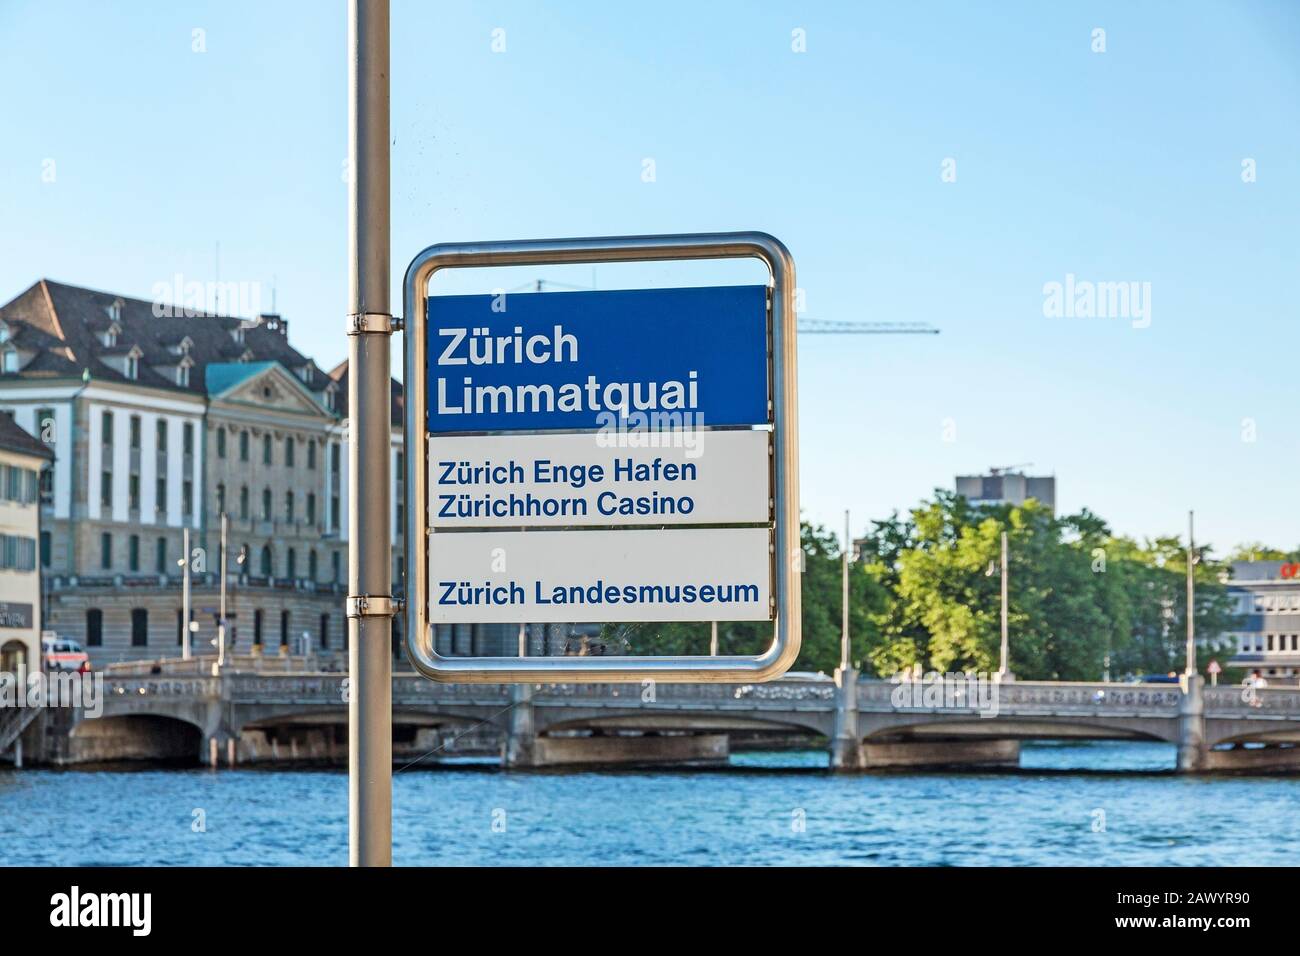 Zurich, Switzerland - June 10, 2017: Sign at Limmatquai near river Limmat signed with 'Zurich Limmatquai' - Zurich port Enge 'Zurich Enge Hafen' - Zur Stock Photo